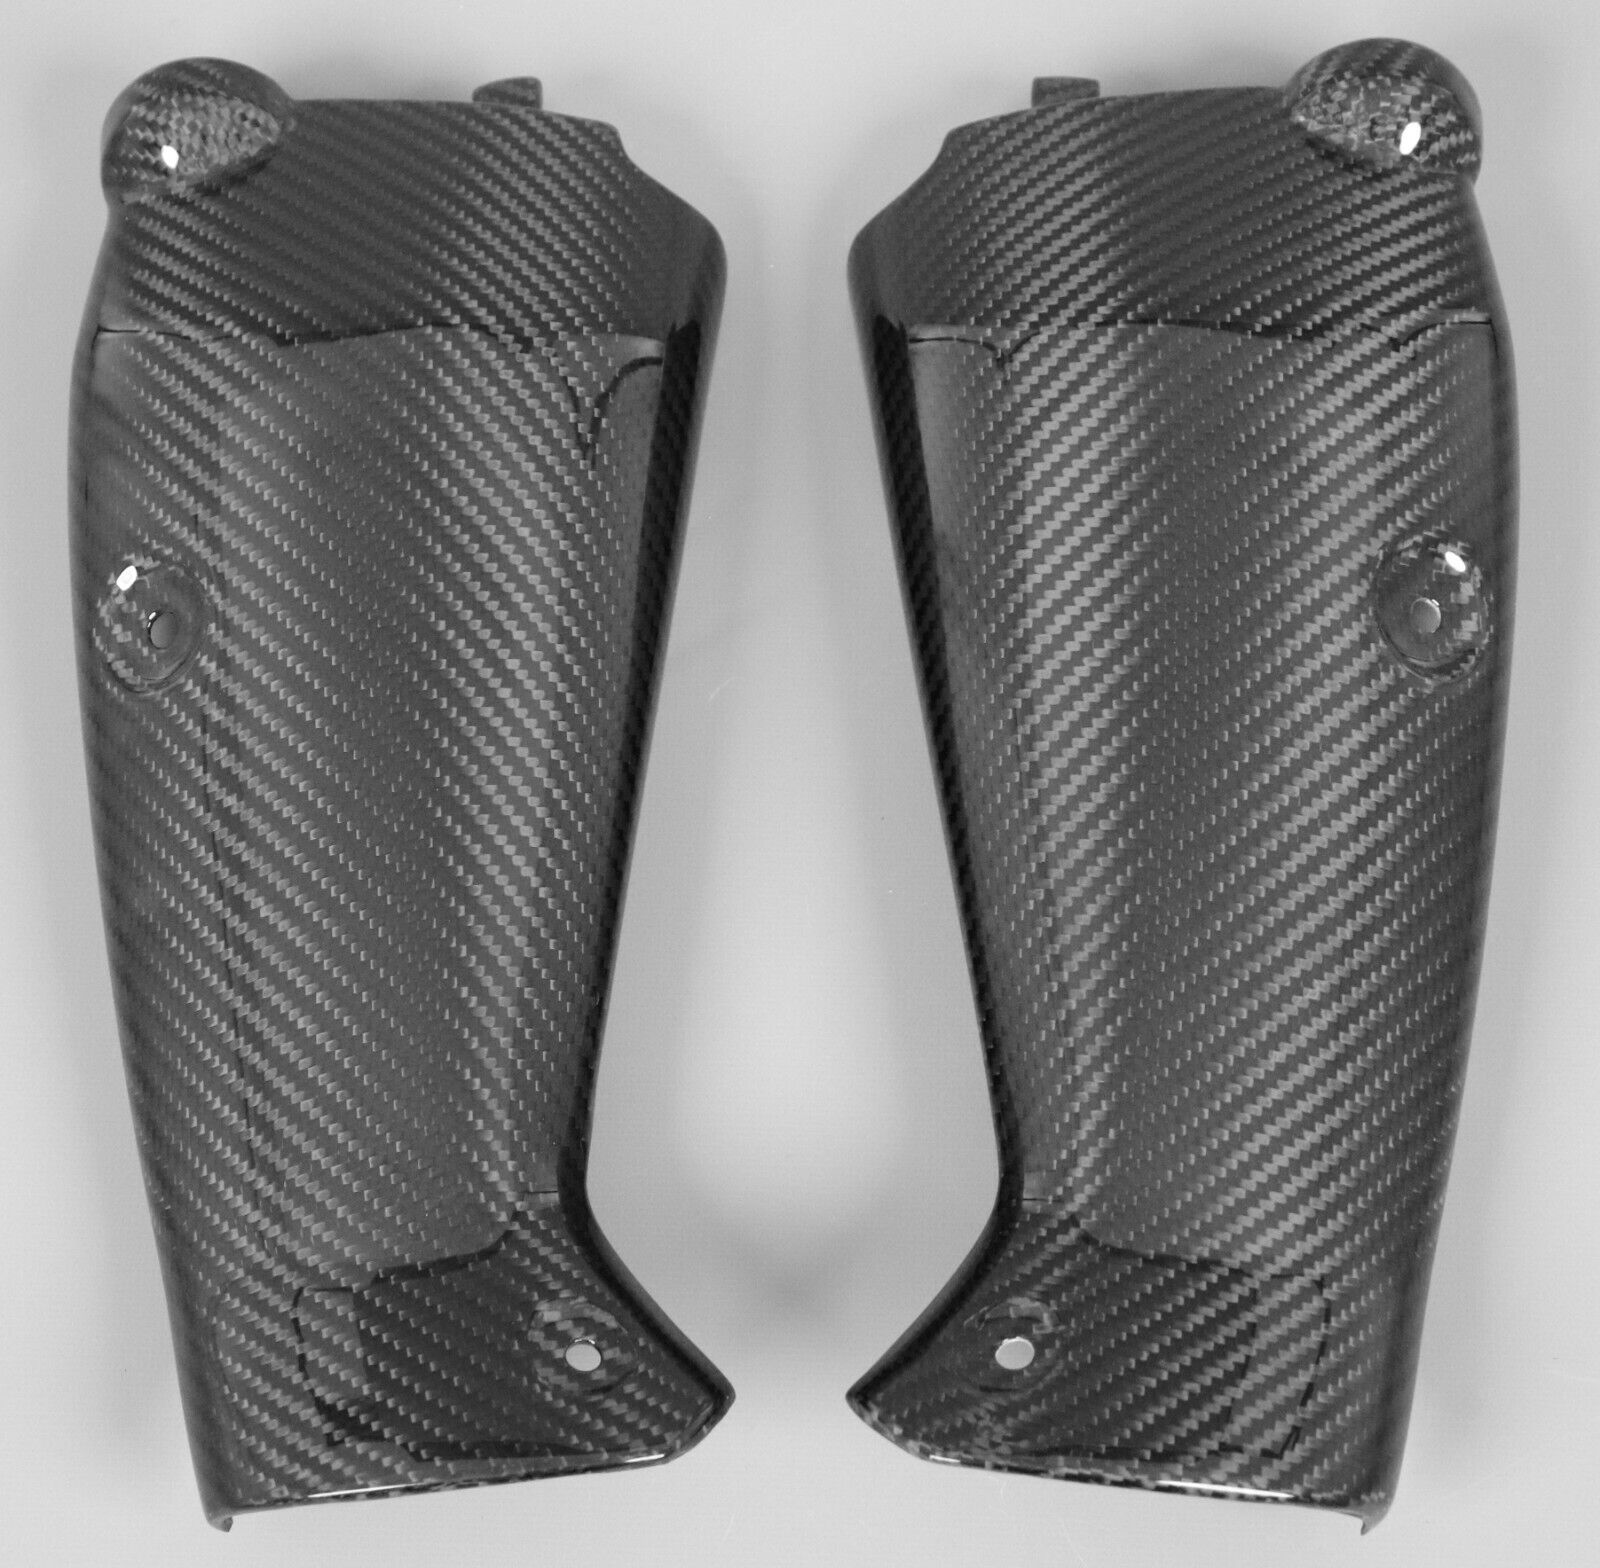 2009-2014 Yamaha R1 Radiator Covers - 100% Carbon Fiber